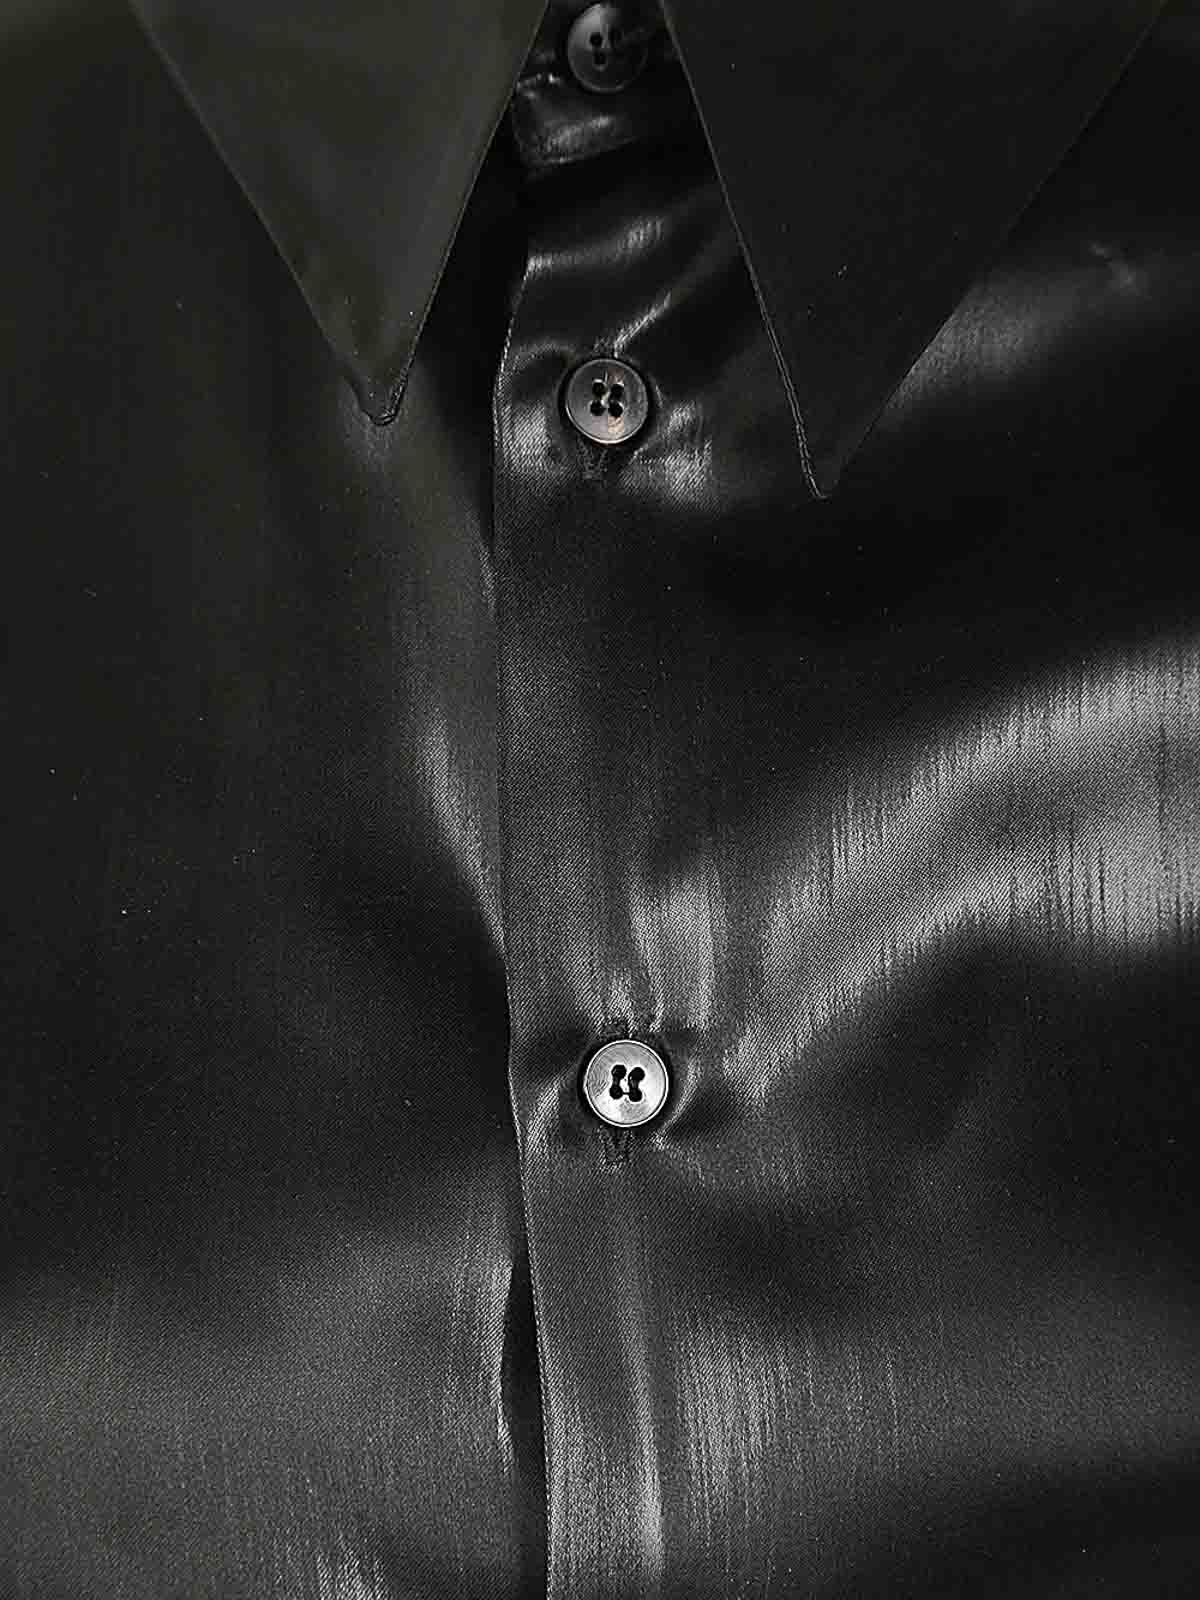 Shop Sapio Camisa - Negro In Black